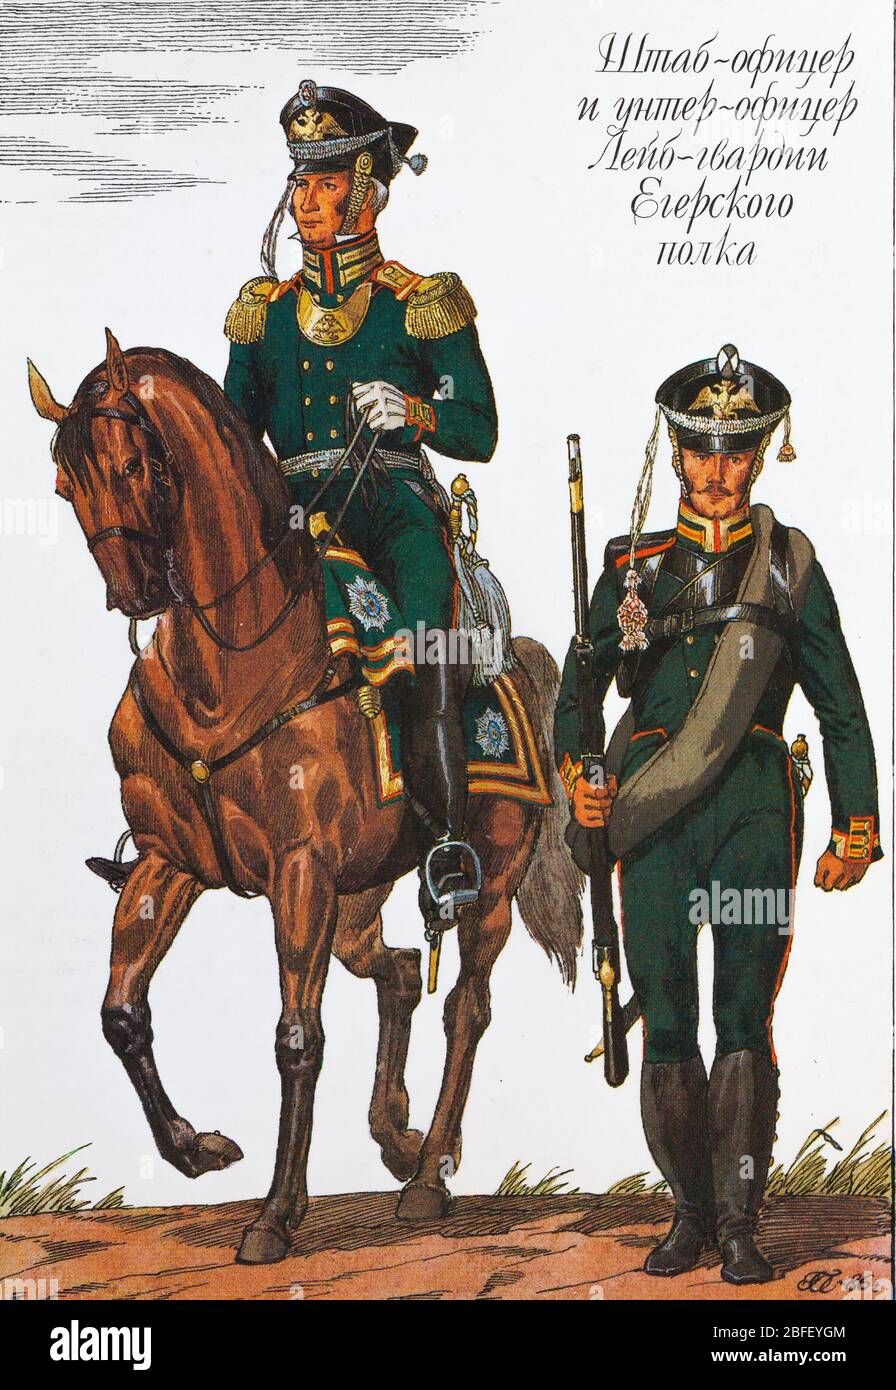 Officier du personnel et petit officier du régiment de la Garde-vie Jaeger, 1812, uniforme de l'armée russe du XIXe siècle, Russie Banque D'Images